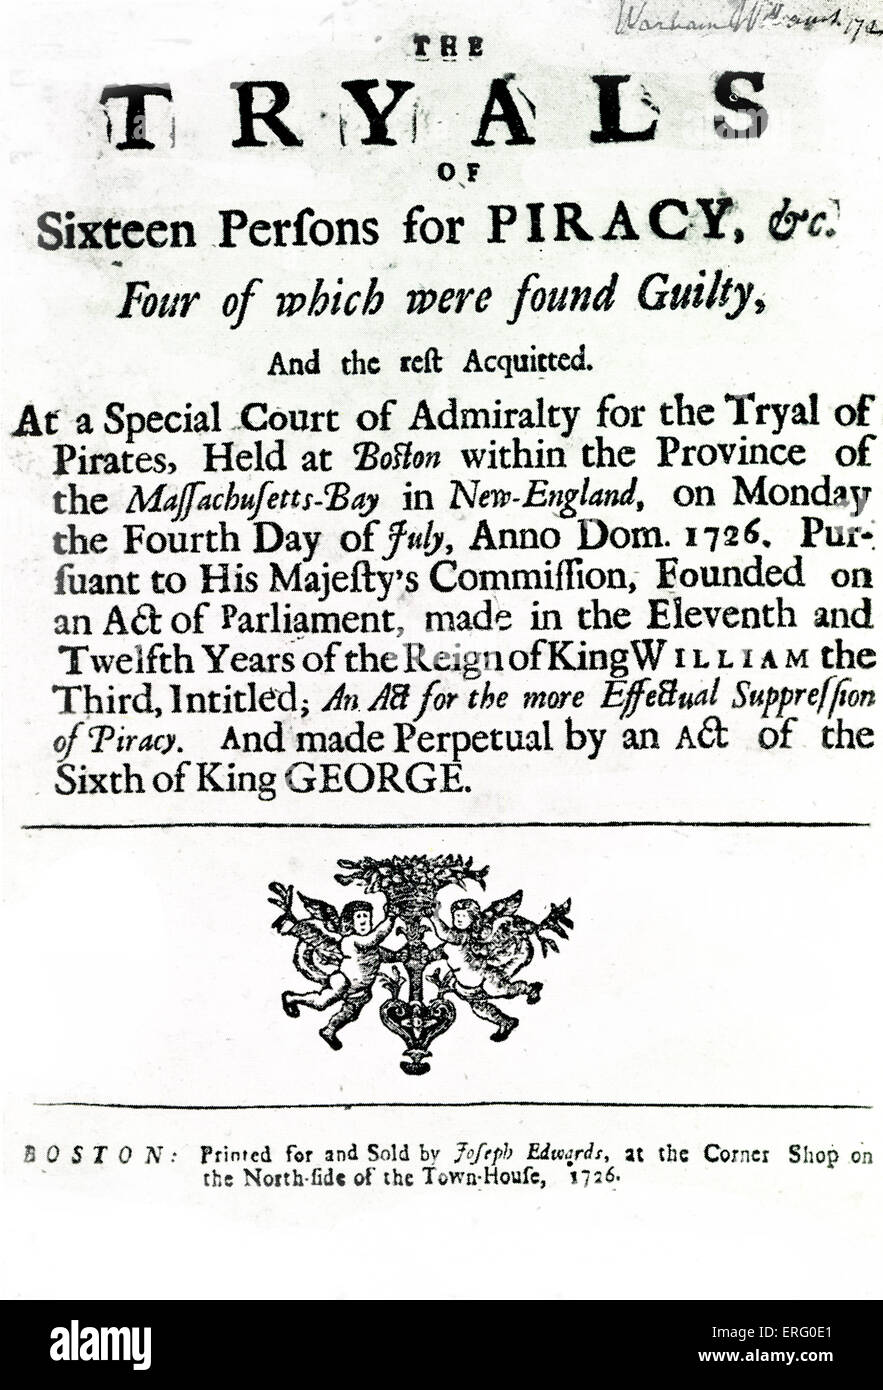 "El Tryals de dieciséis personas por piratería", título de página de cuentas de prueba desde el 4 de julio de 1726, en Boston, Massachusetts. Cuatro de Foto de stock